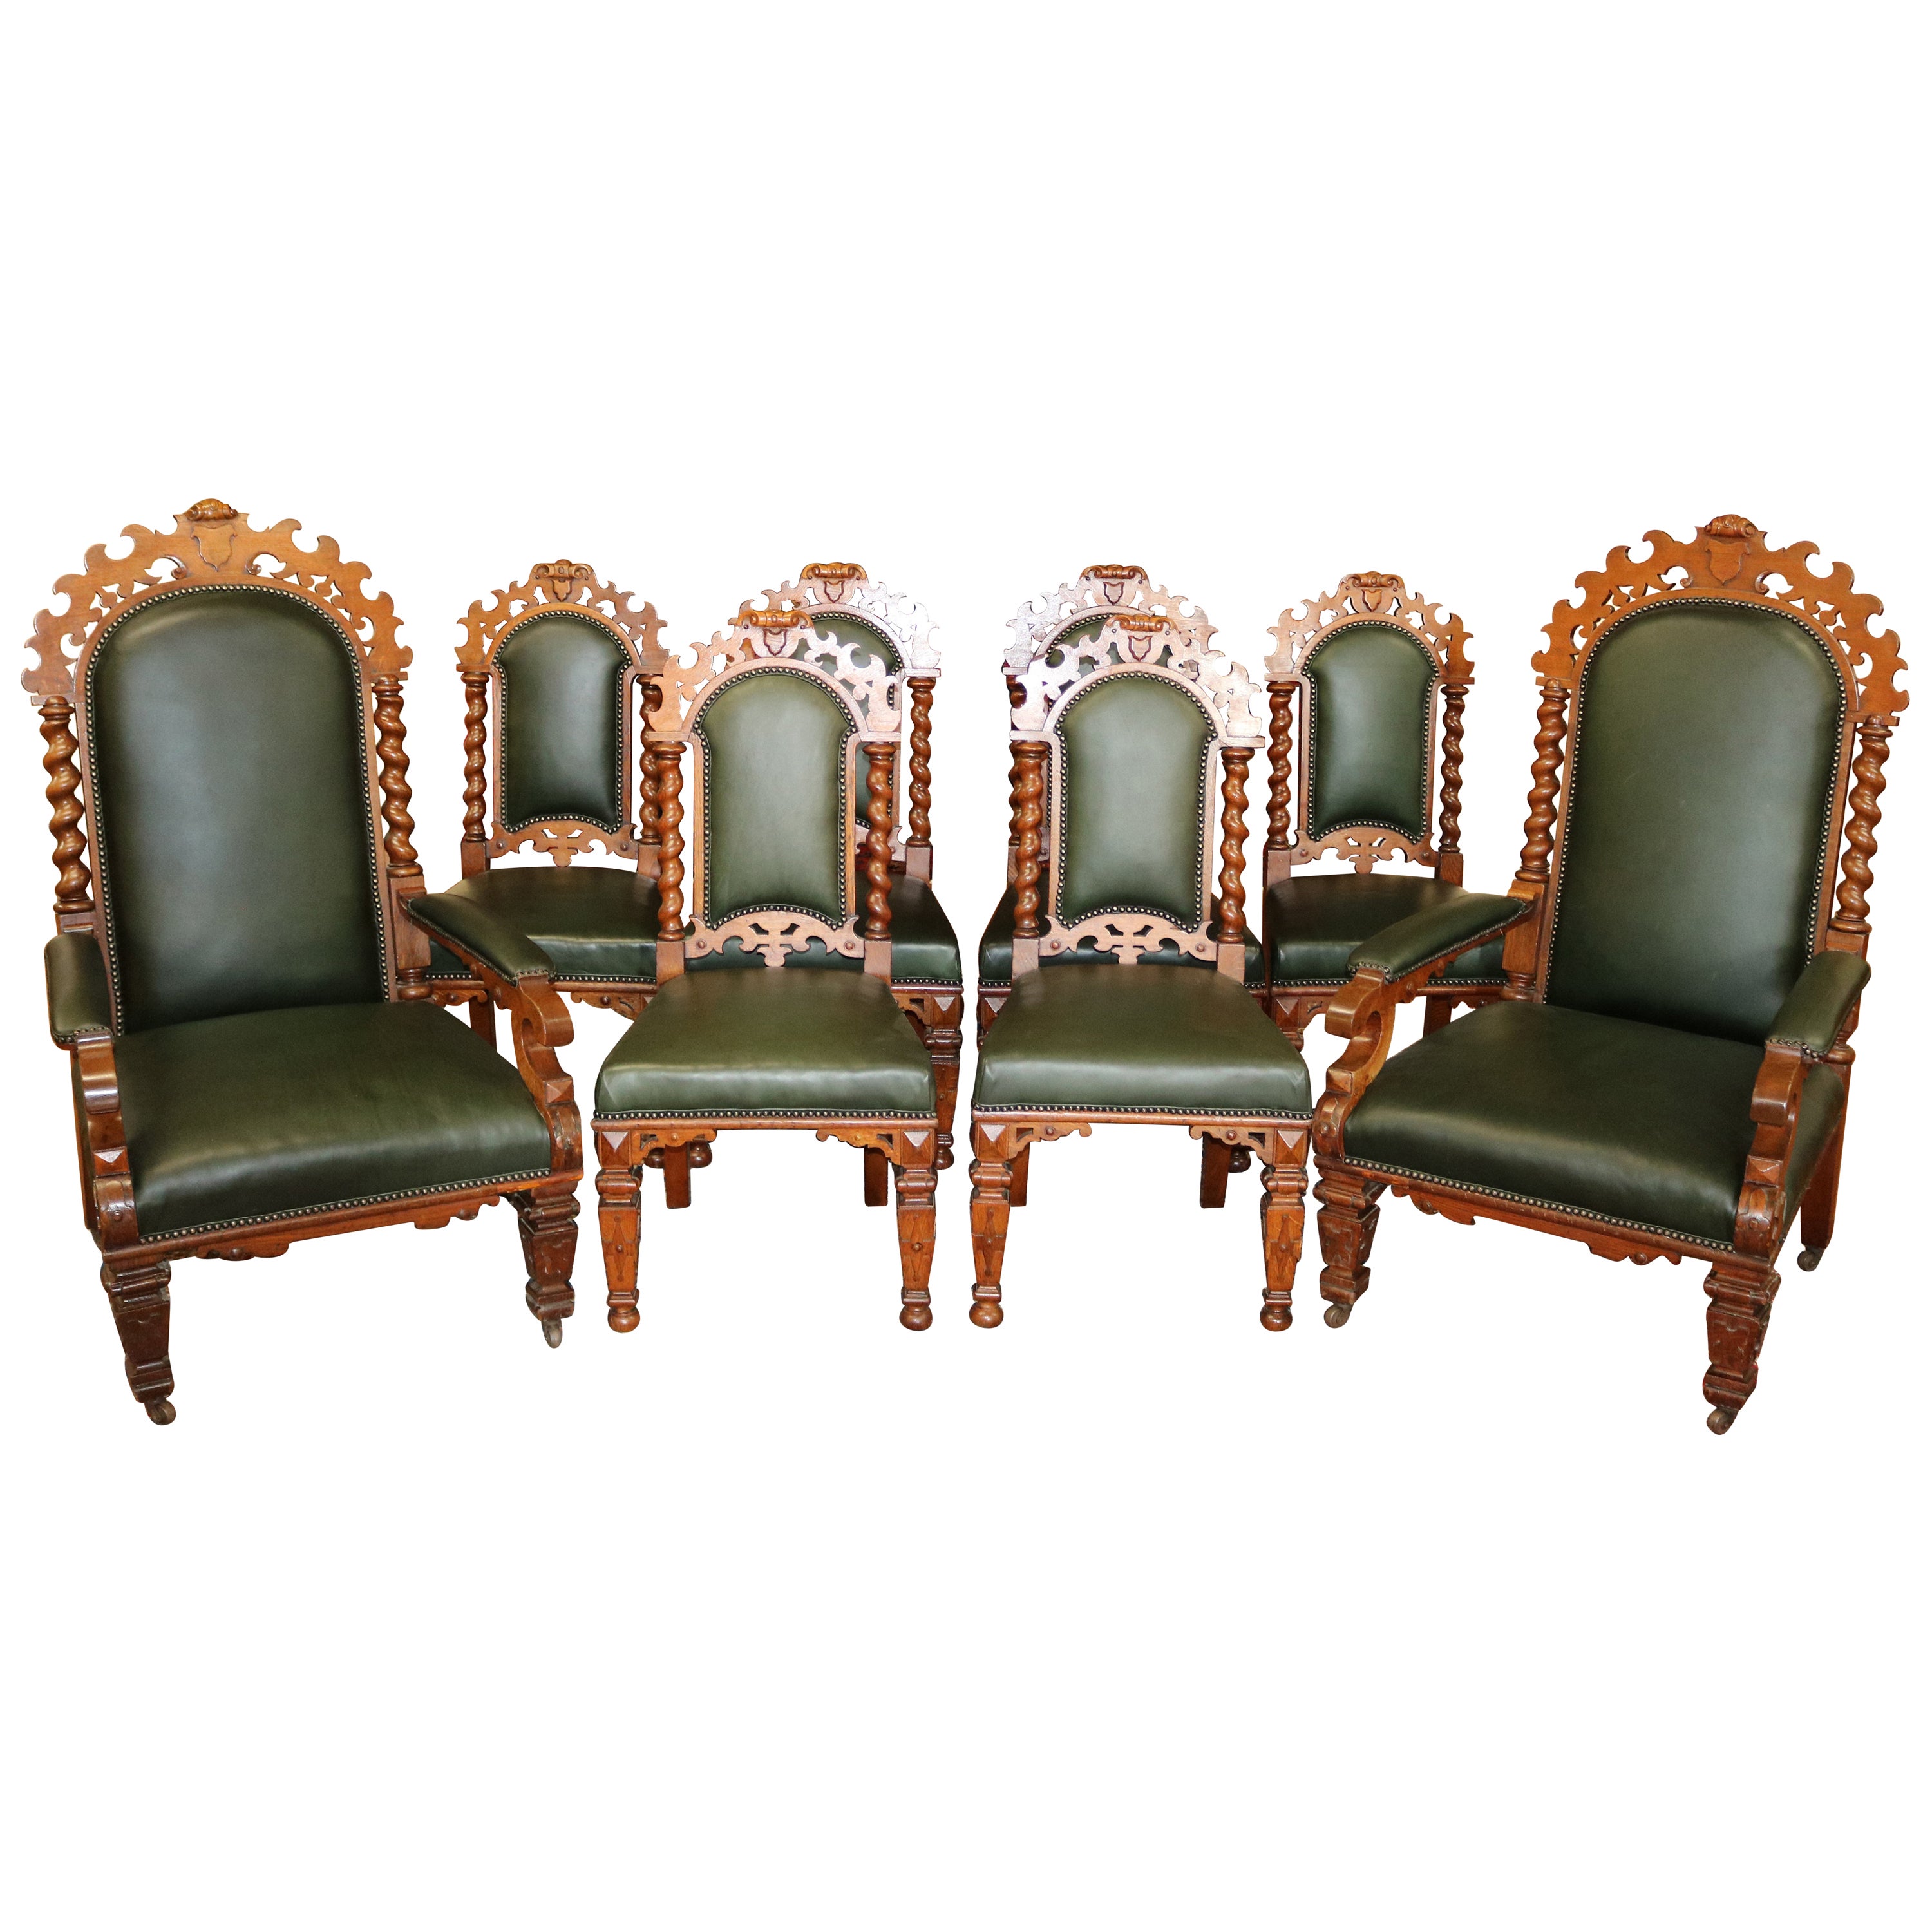 Satz von 8 viktorianischen Barley Twist-Esszimmerstühlen aus Eiche und grünem Leder aus dem 19. Jahrhundert